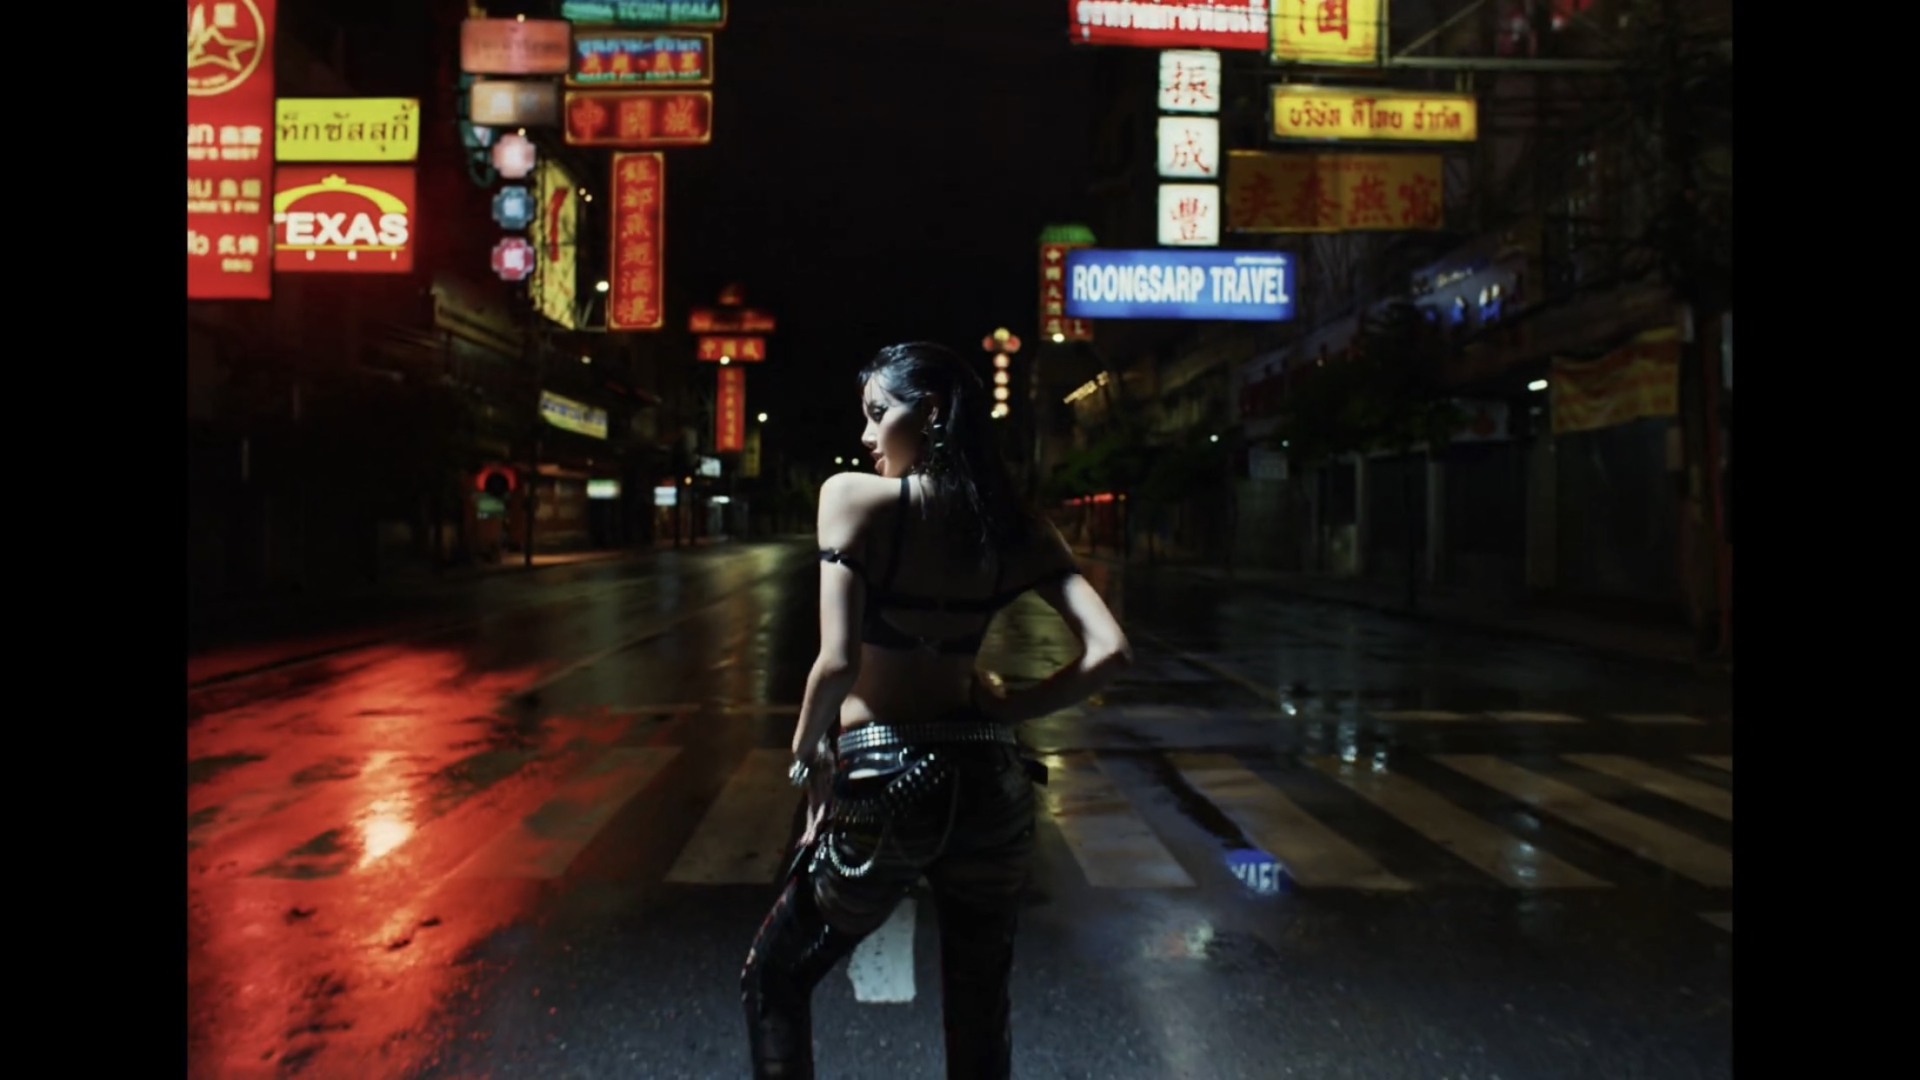 MV 'ROCKSTAR' được thực hiện trên con phố nổi tiếng China Town tại Bangkok, Thái Lan